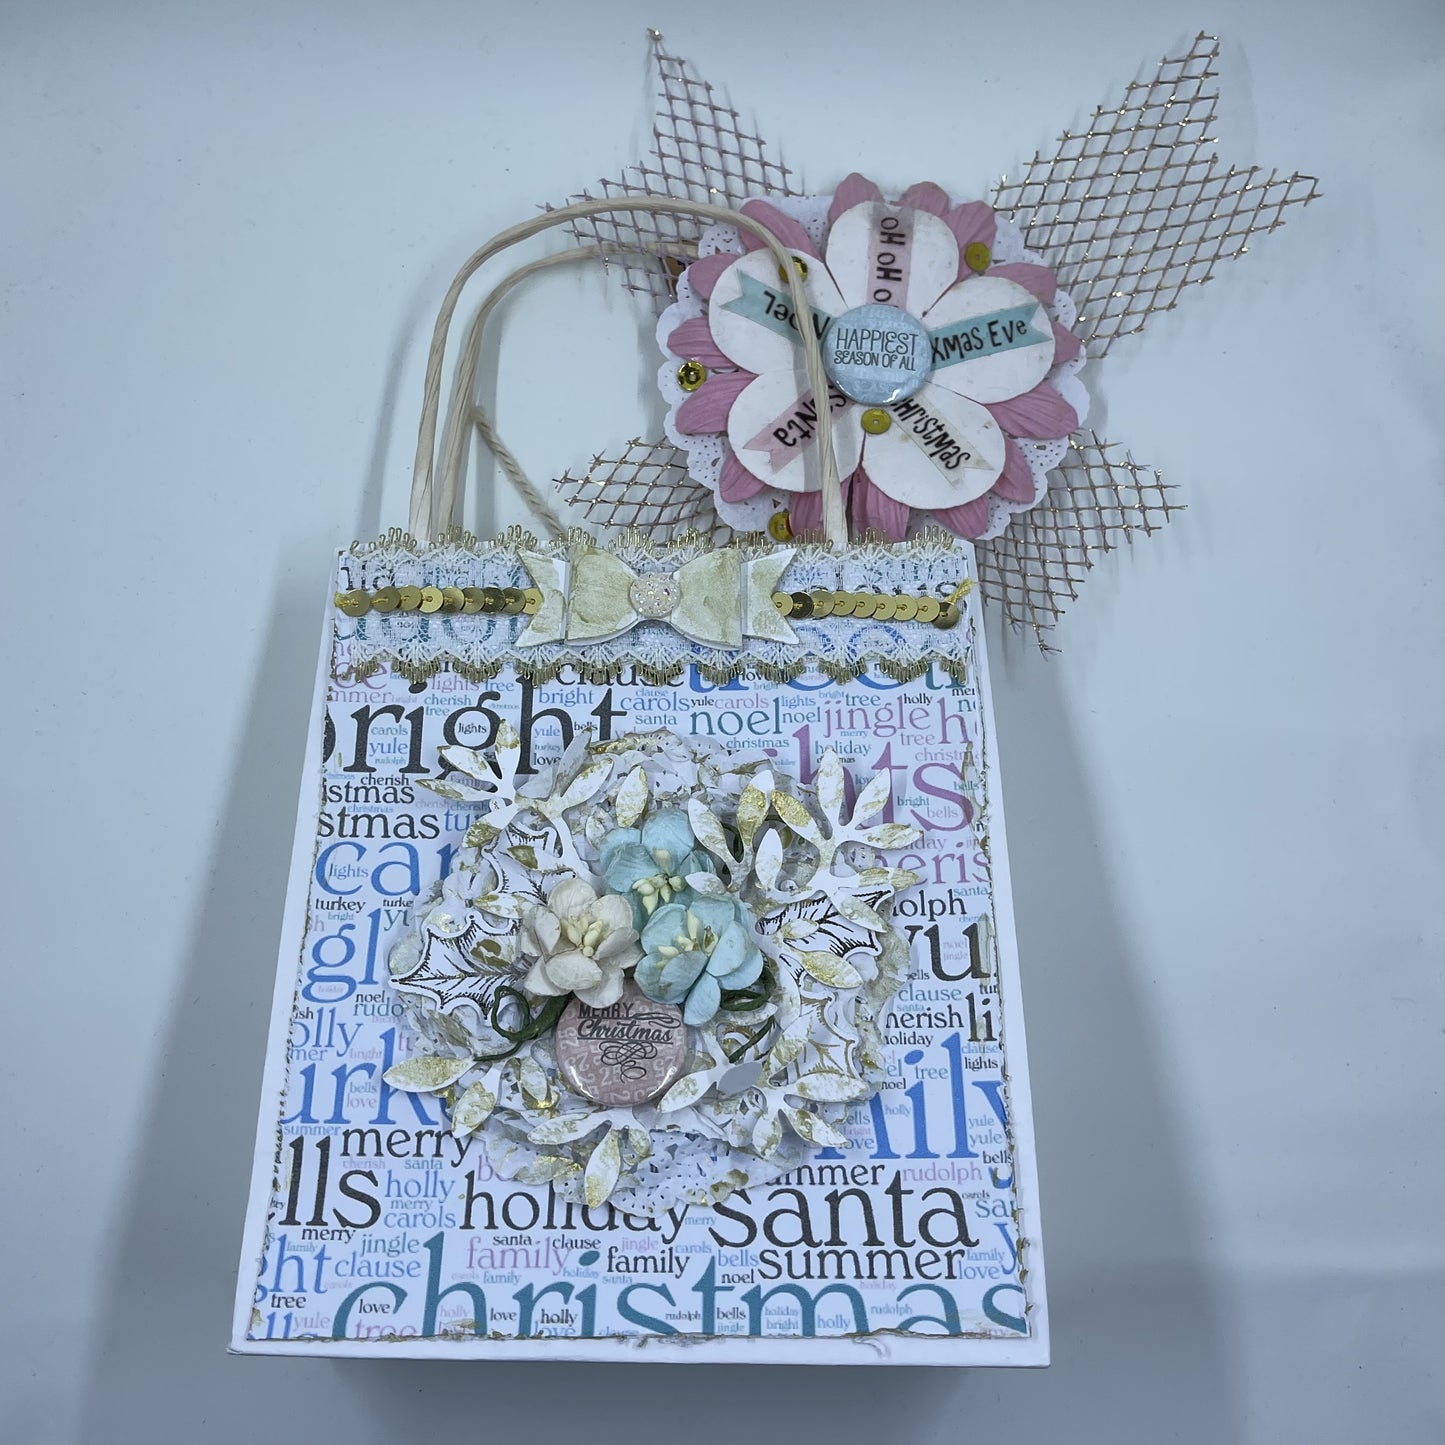 Christmas gift bag with tags